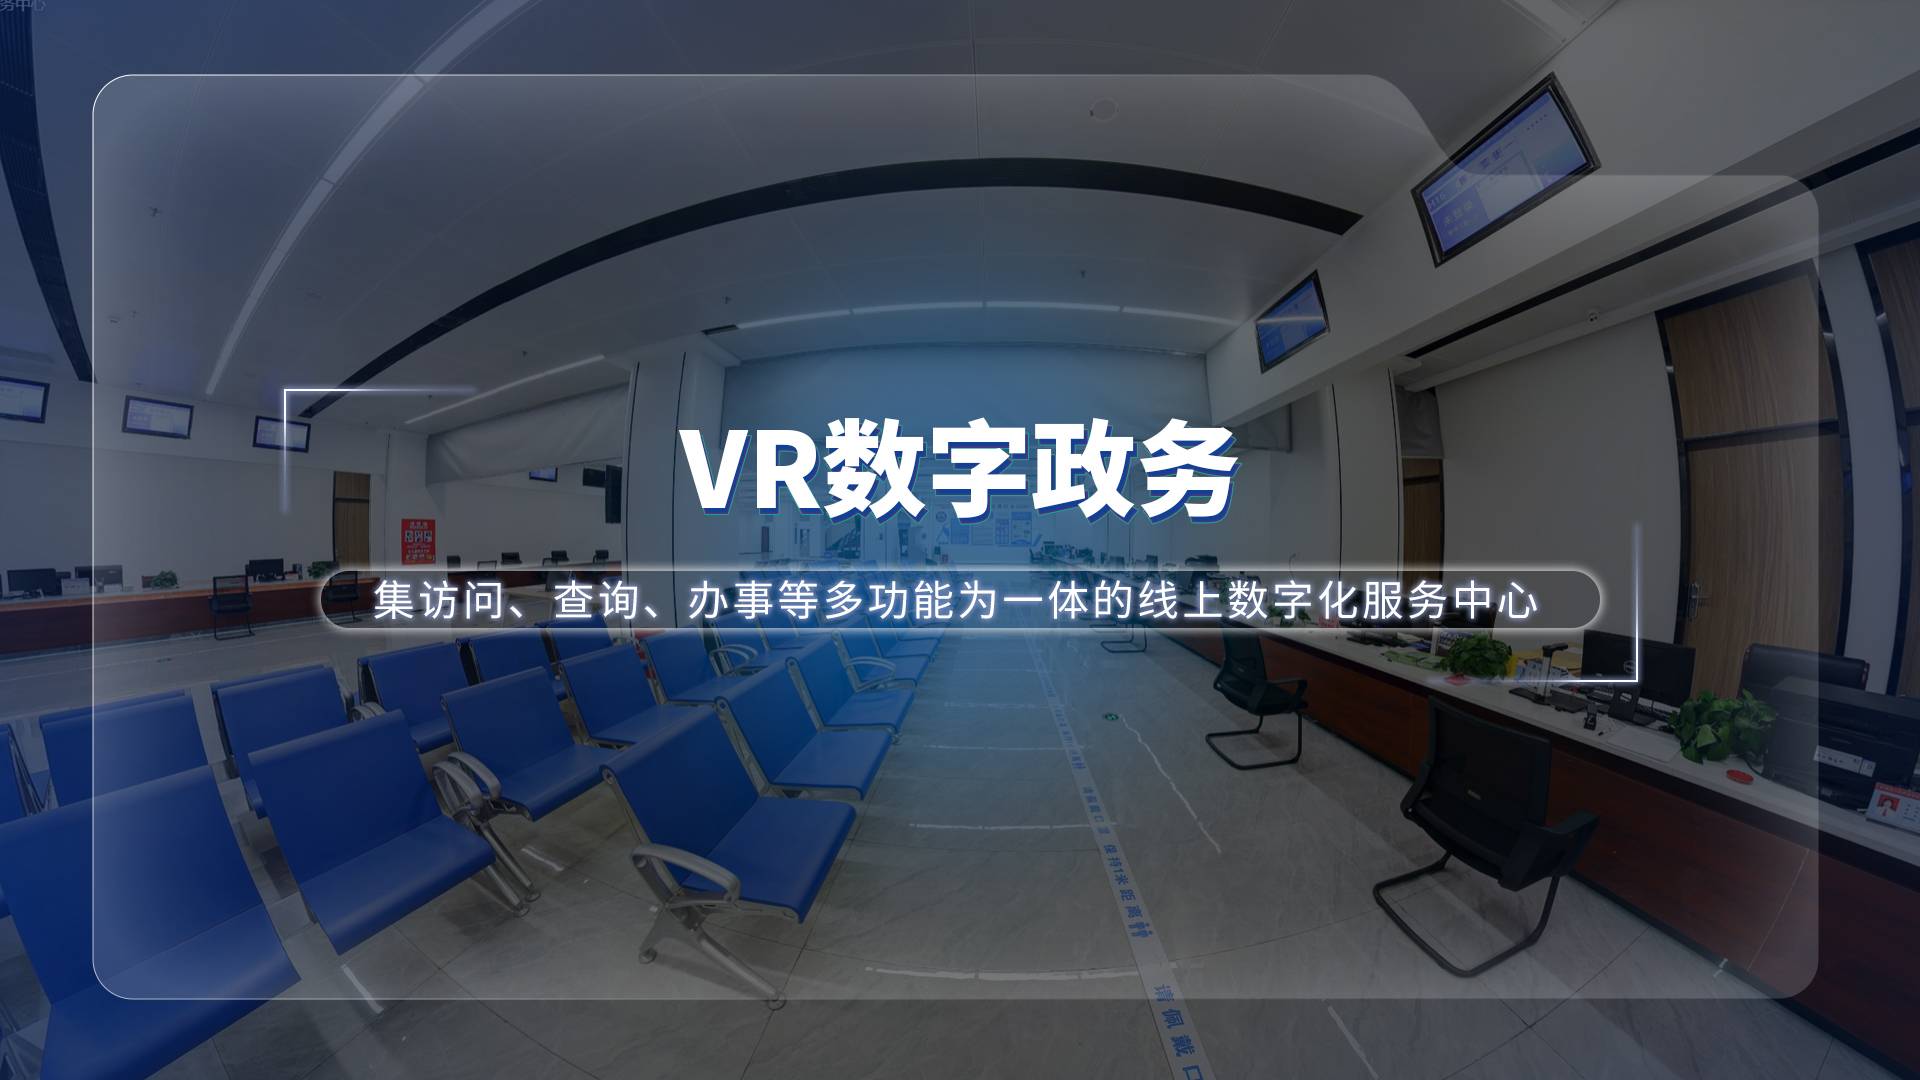 VR数字政务—政务服务全新数字化解决方案